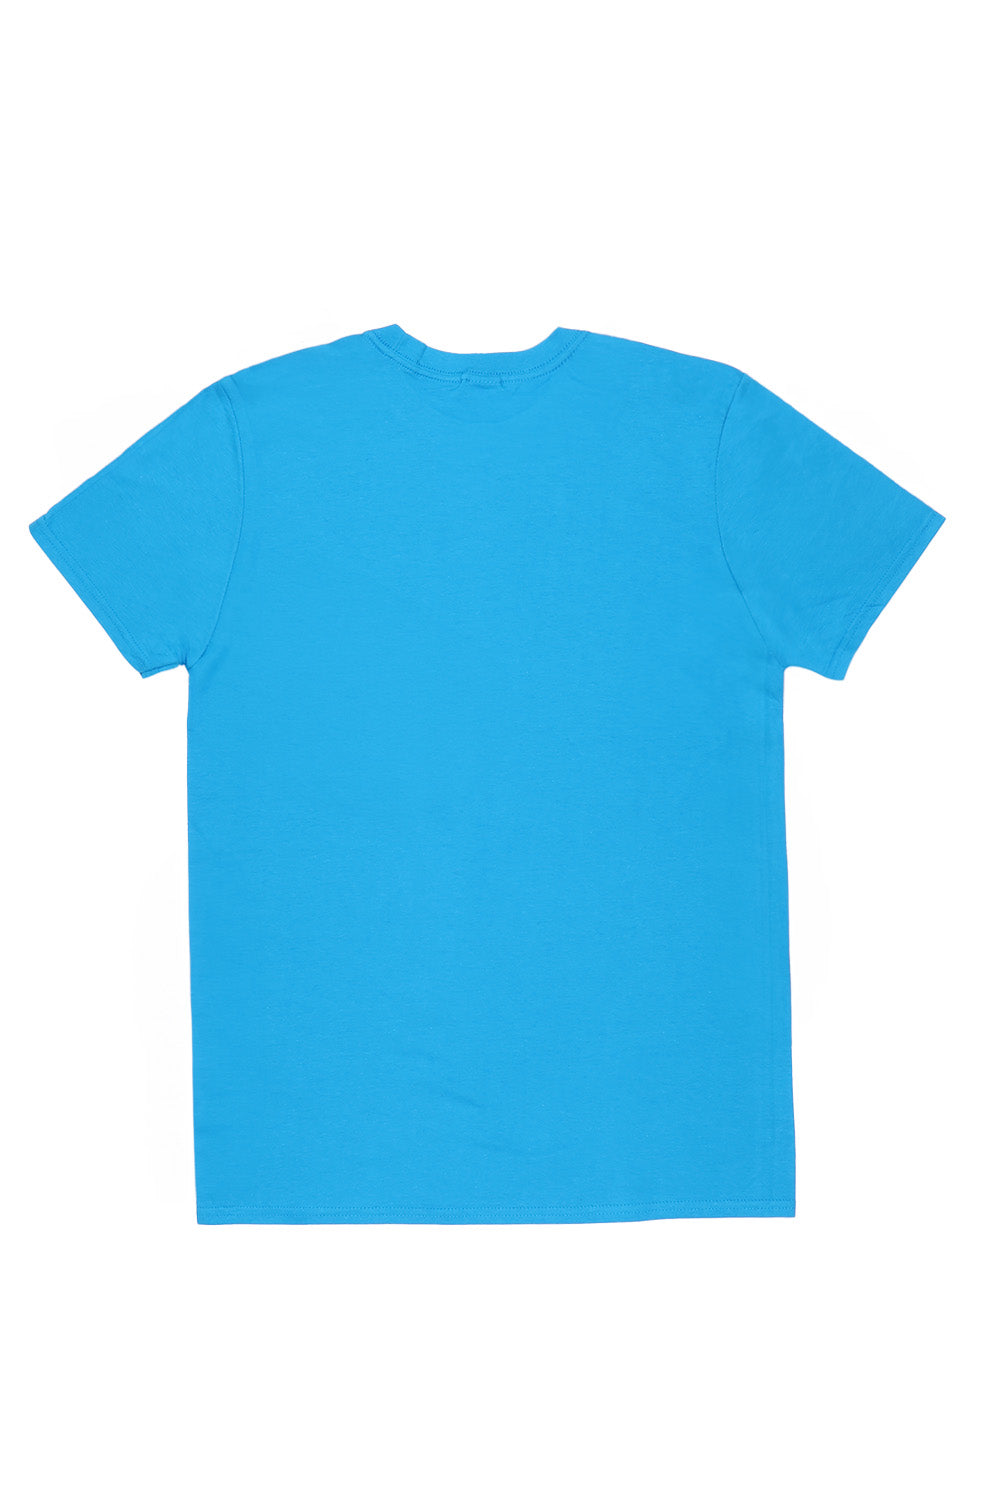 France T-Shirt in Sapphire Blue (Custom Packs)